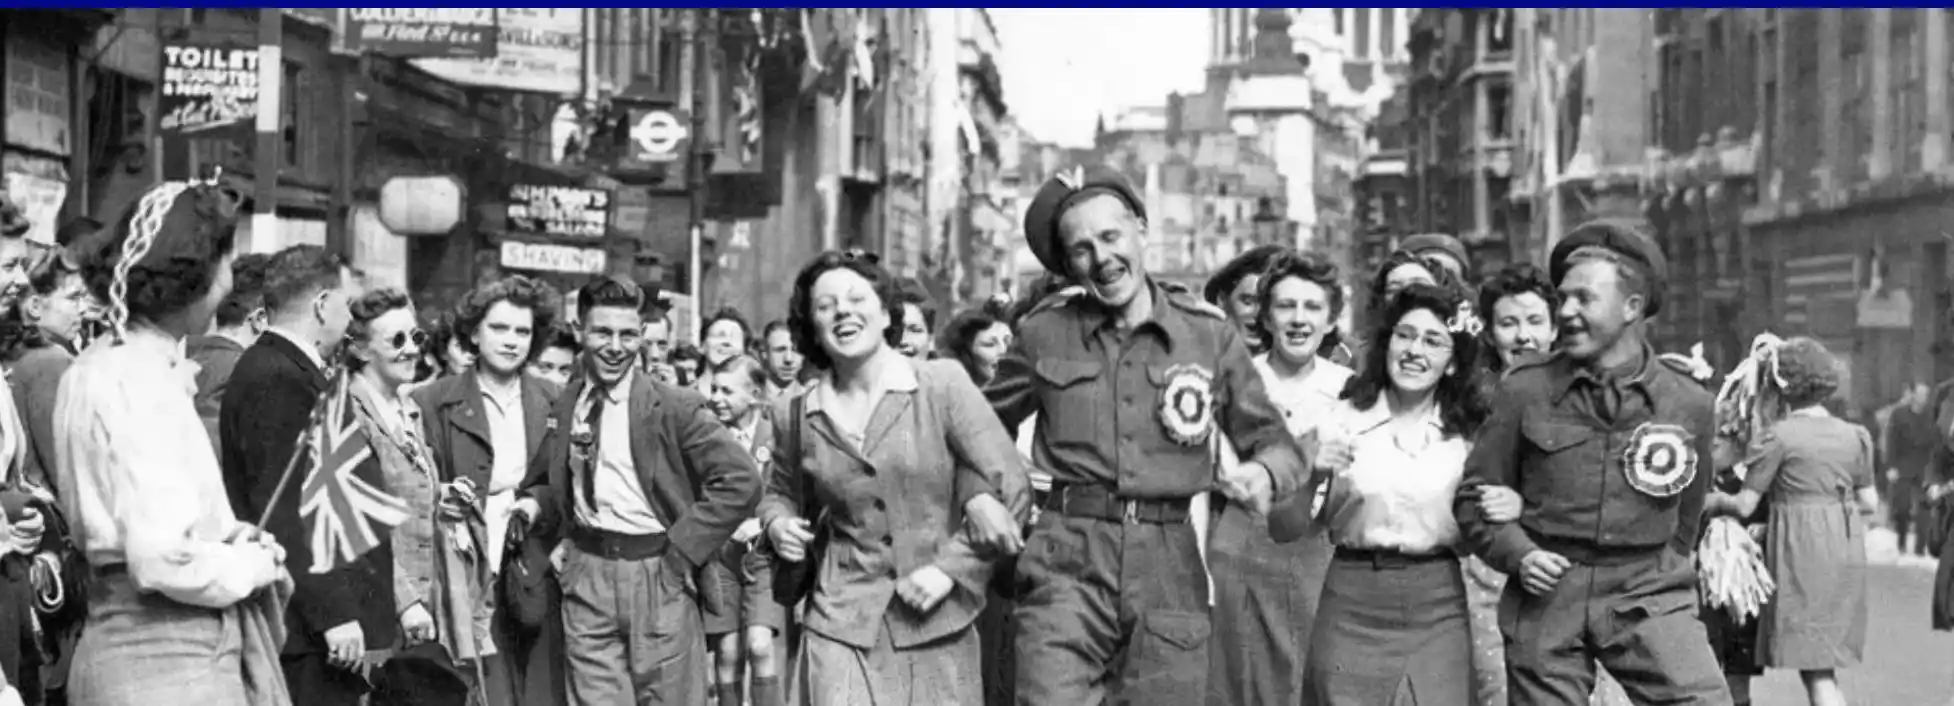 image of WWII celebration